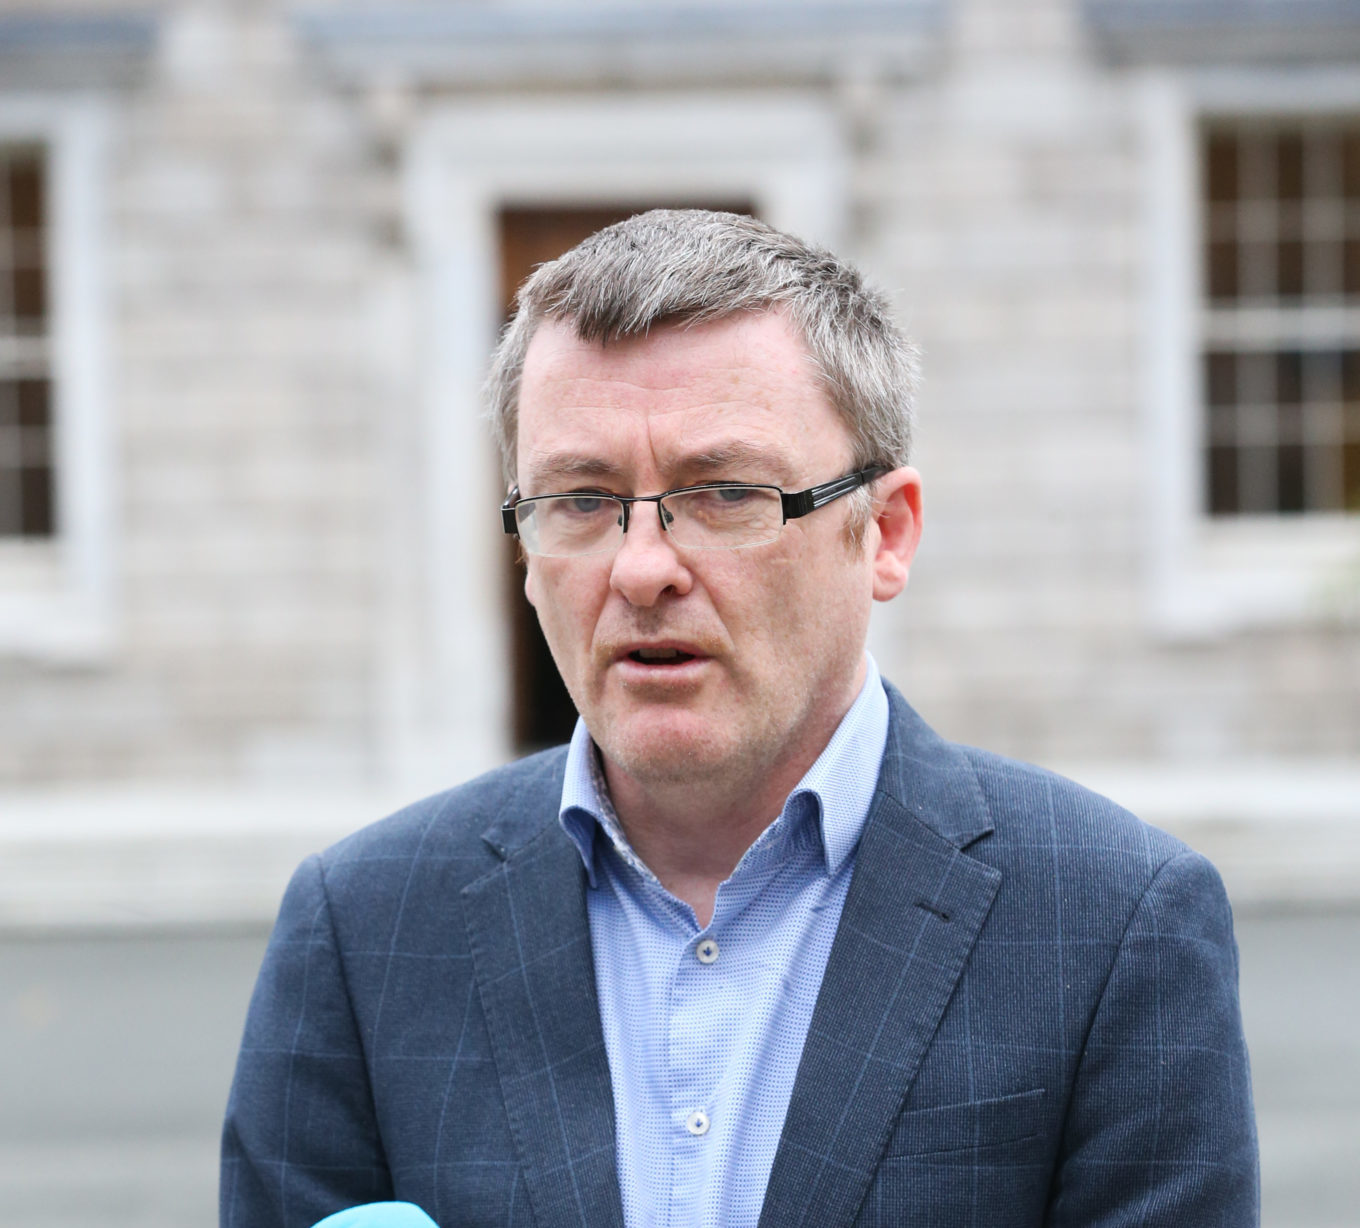 Sinn Fein TD David Cullinane speaking on the Plinth outside Leinster House in November 2021.